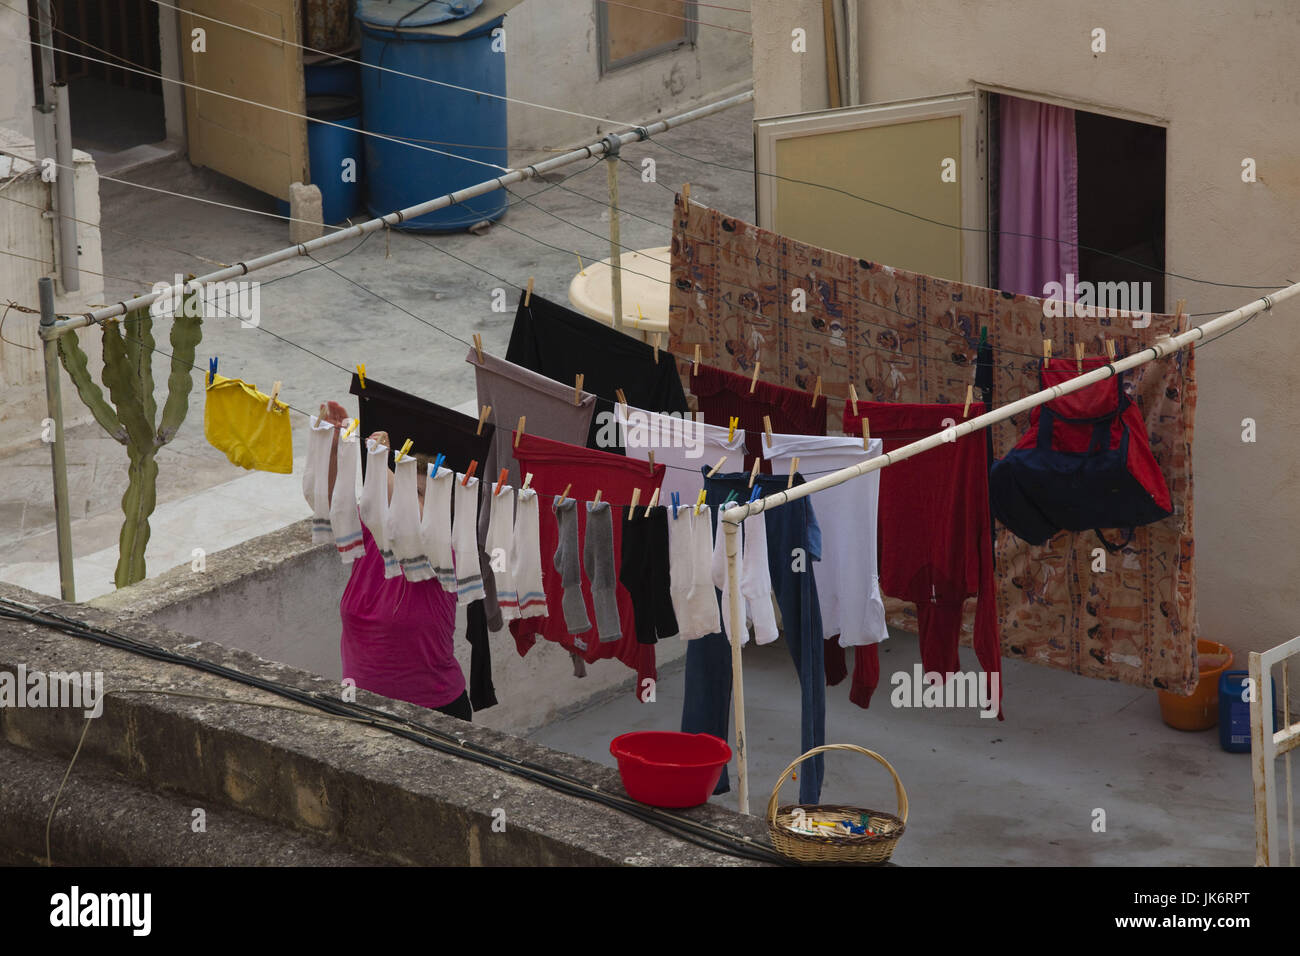 Malta, Valletta, laundry drying Stock Photo